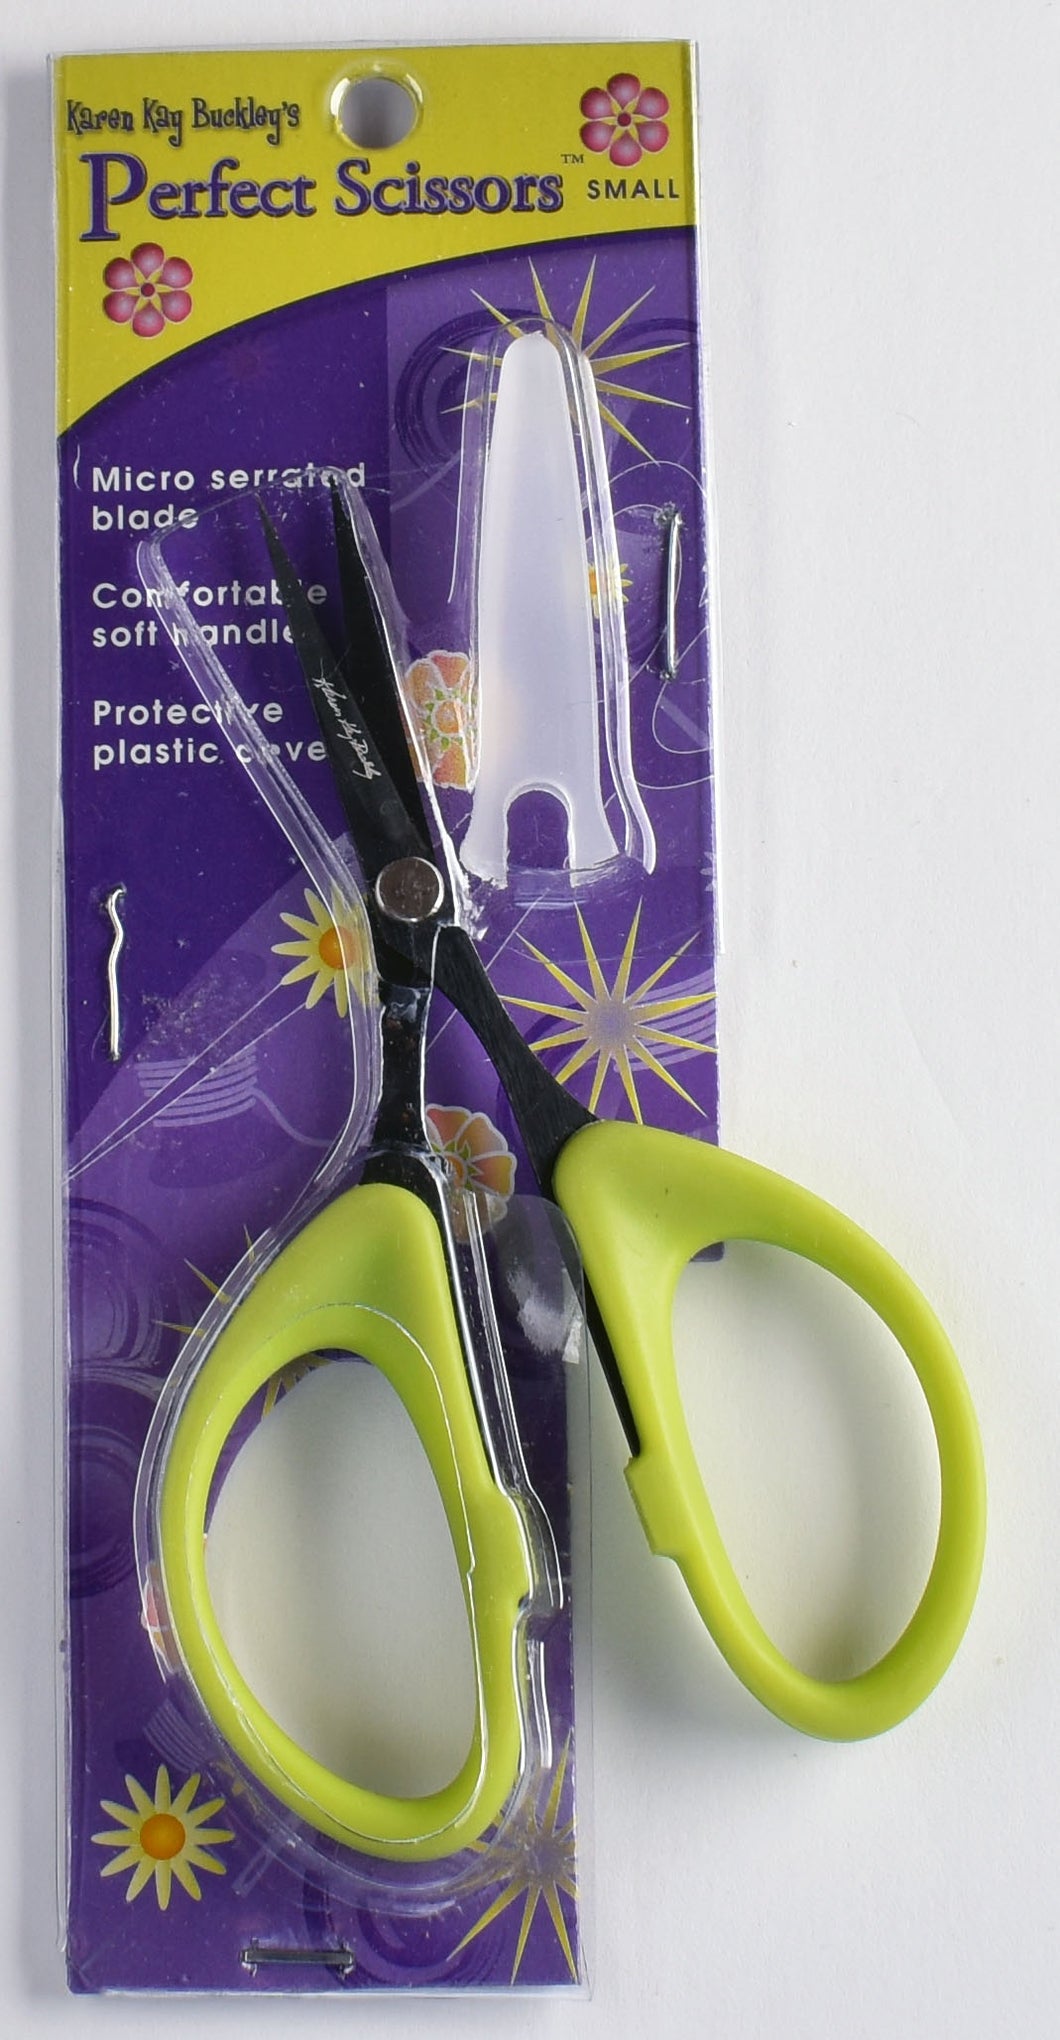 Karen Kay Buckley's Perfect Scissors Small